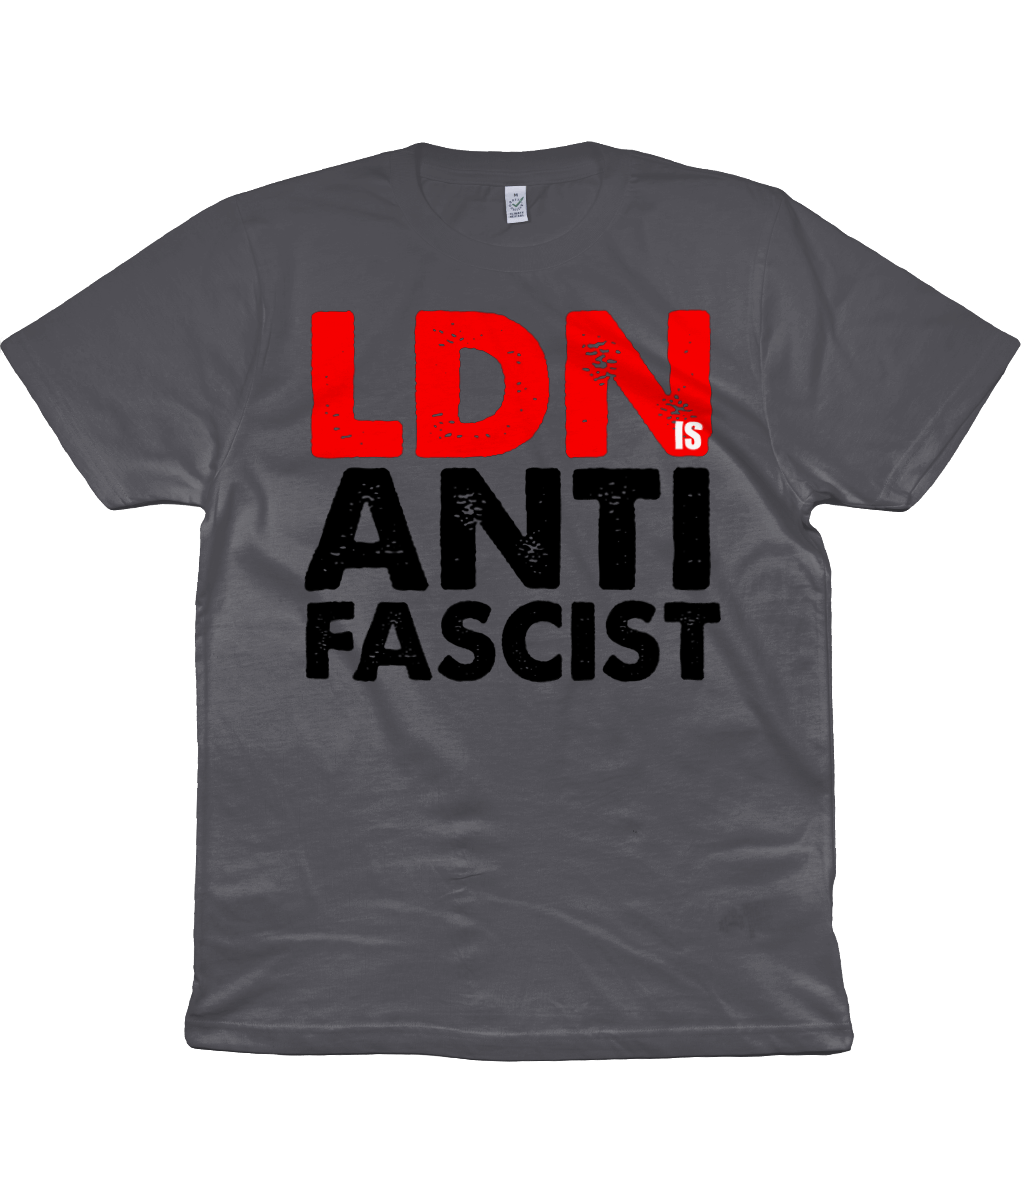 London is Anti-Fascist